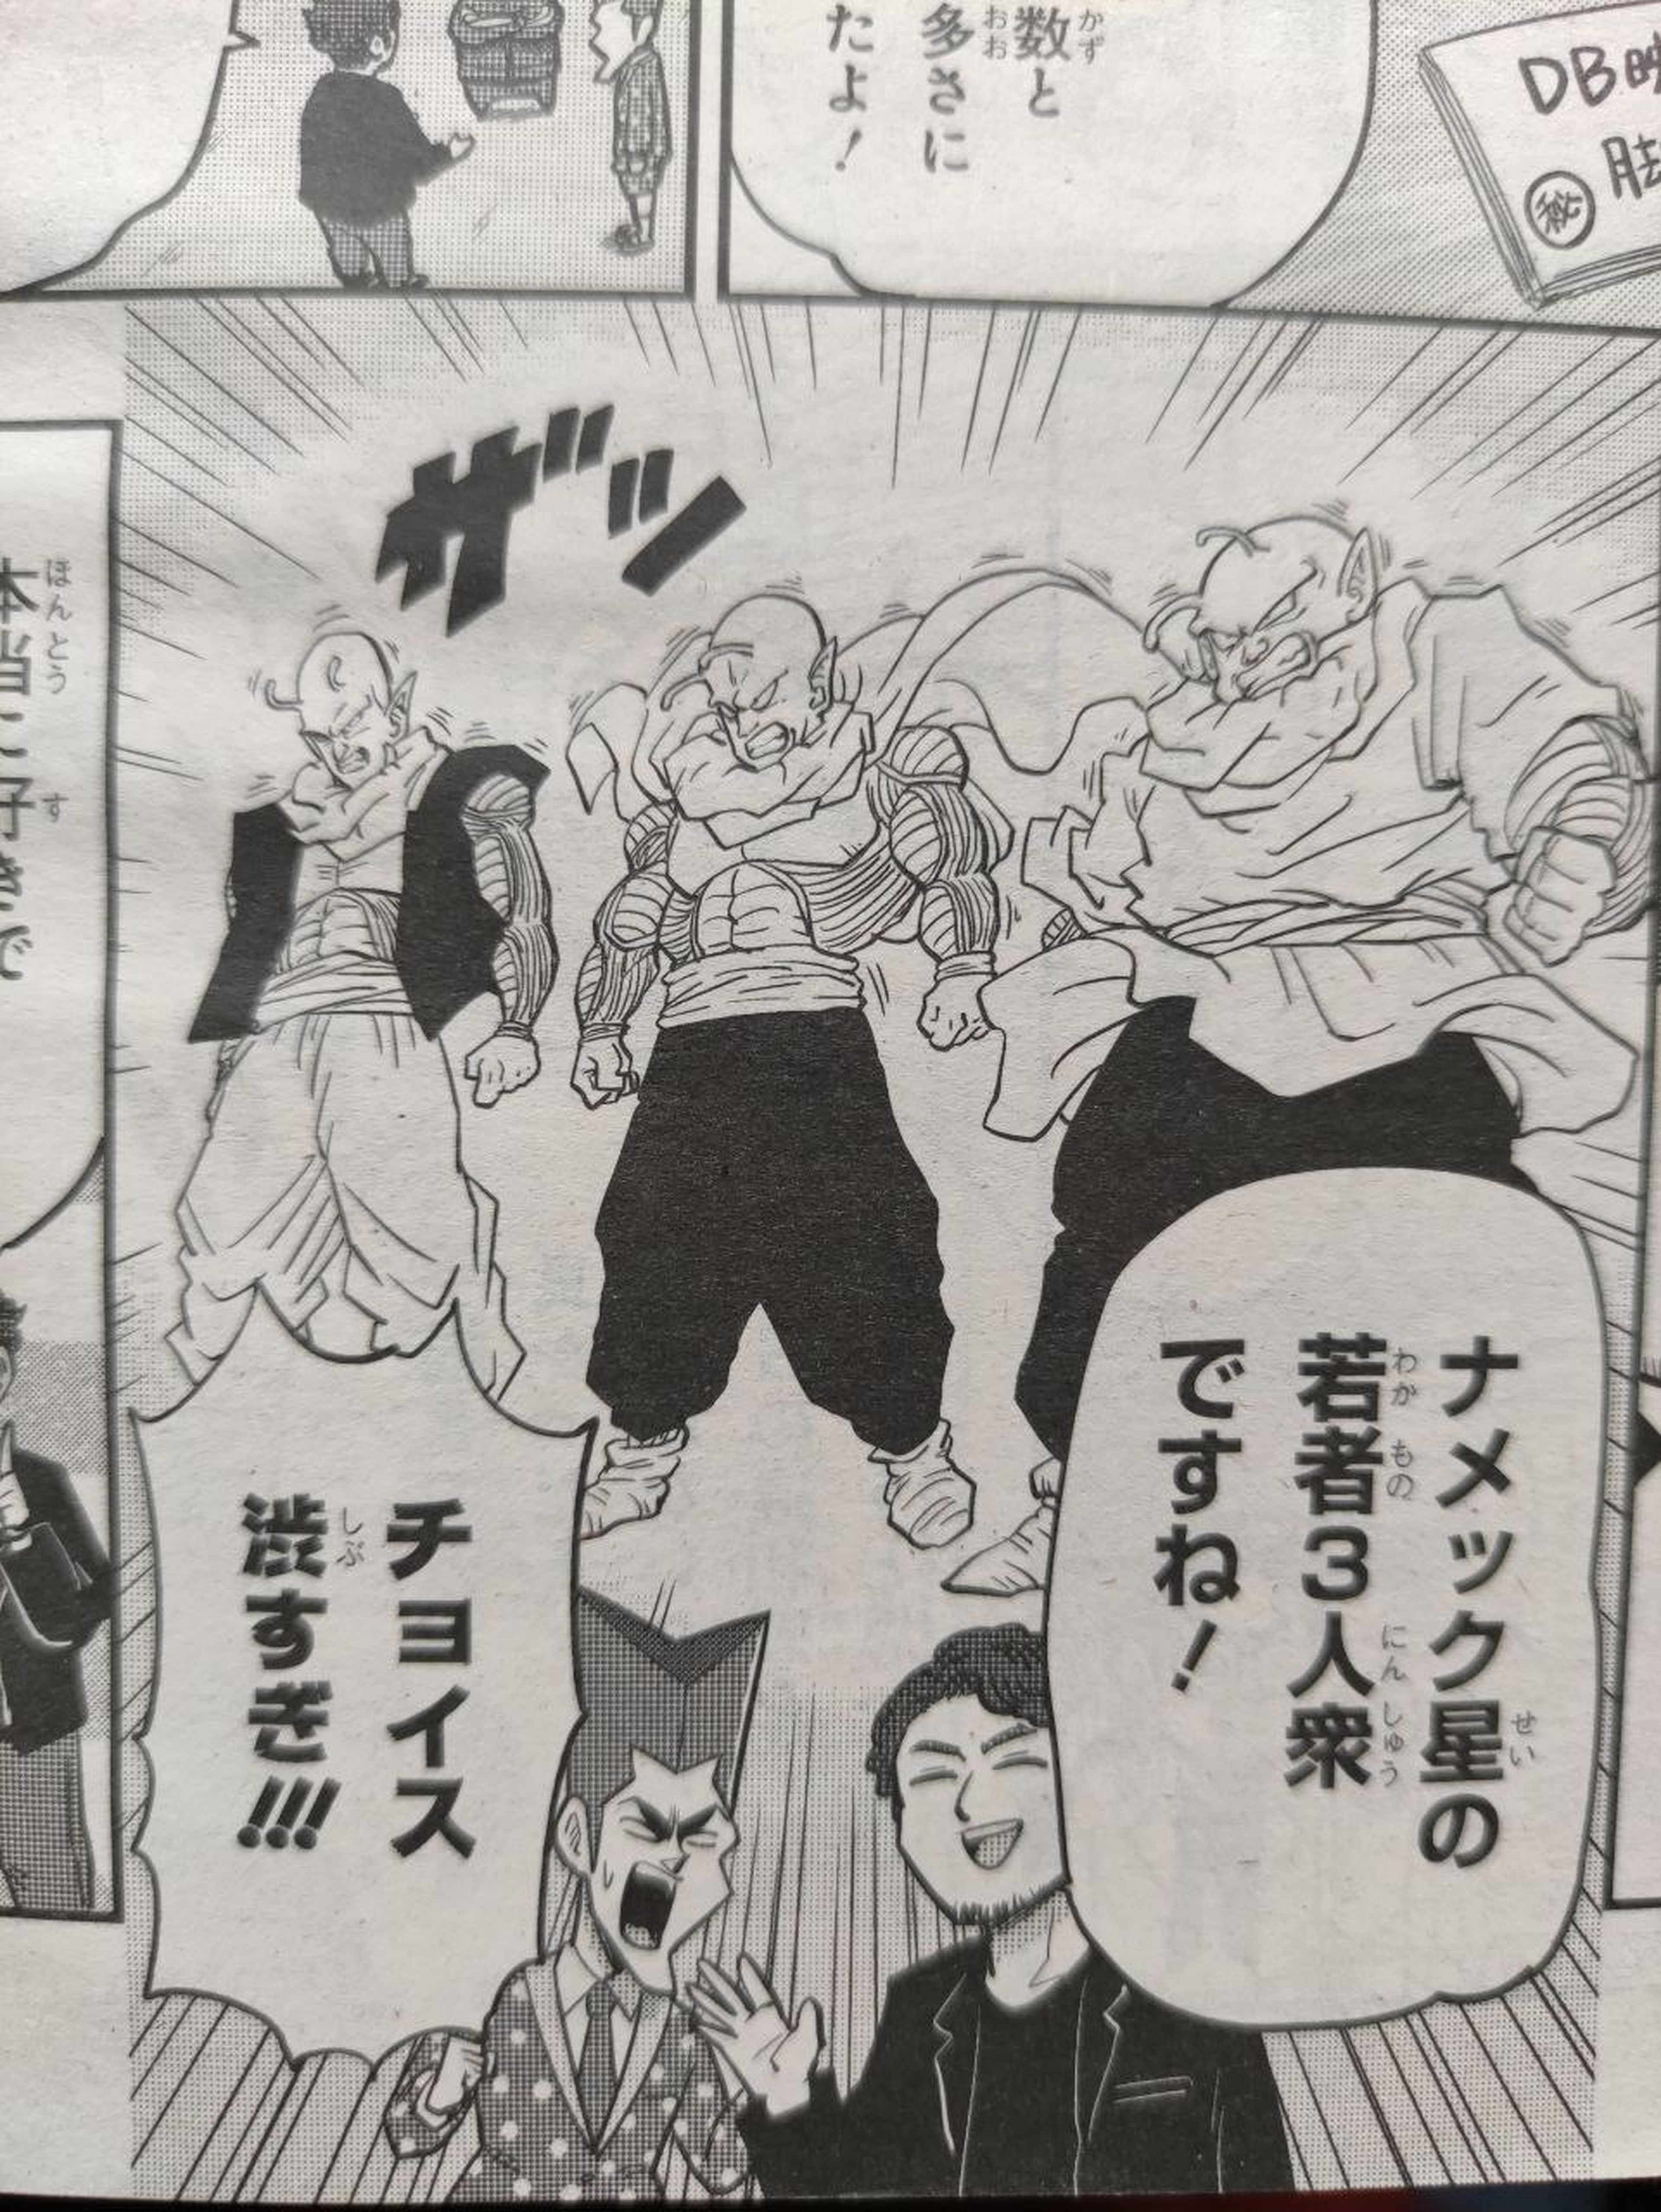 Dragon Ball Super: Super Hero - Se desvela que tres antiguos luchadores de la serie tendrán un homenaje secreto en la película